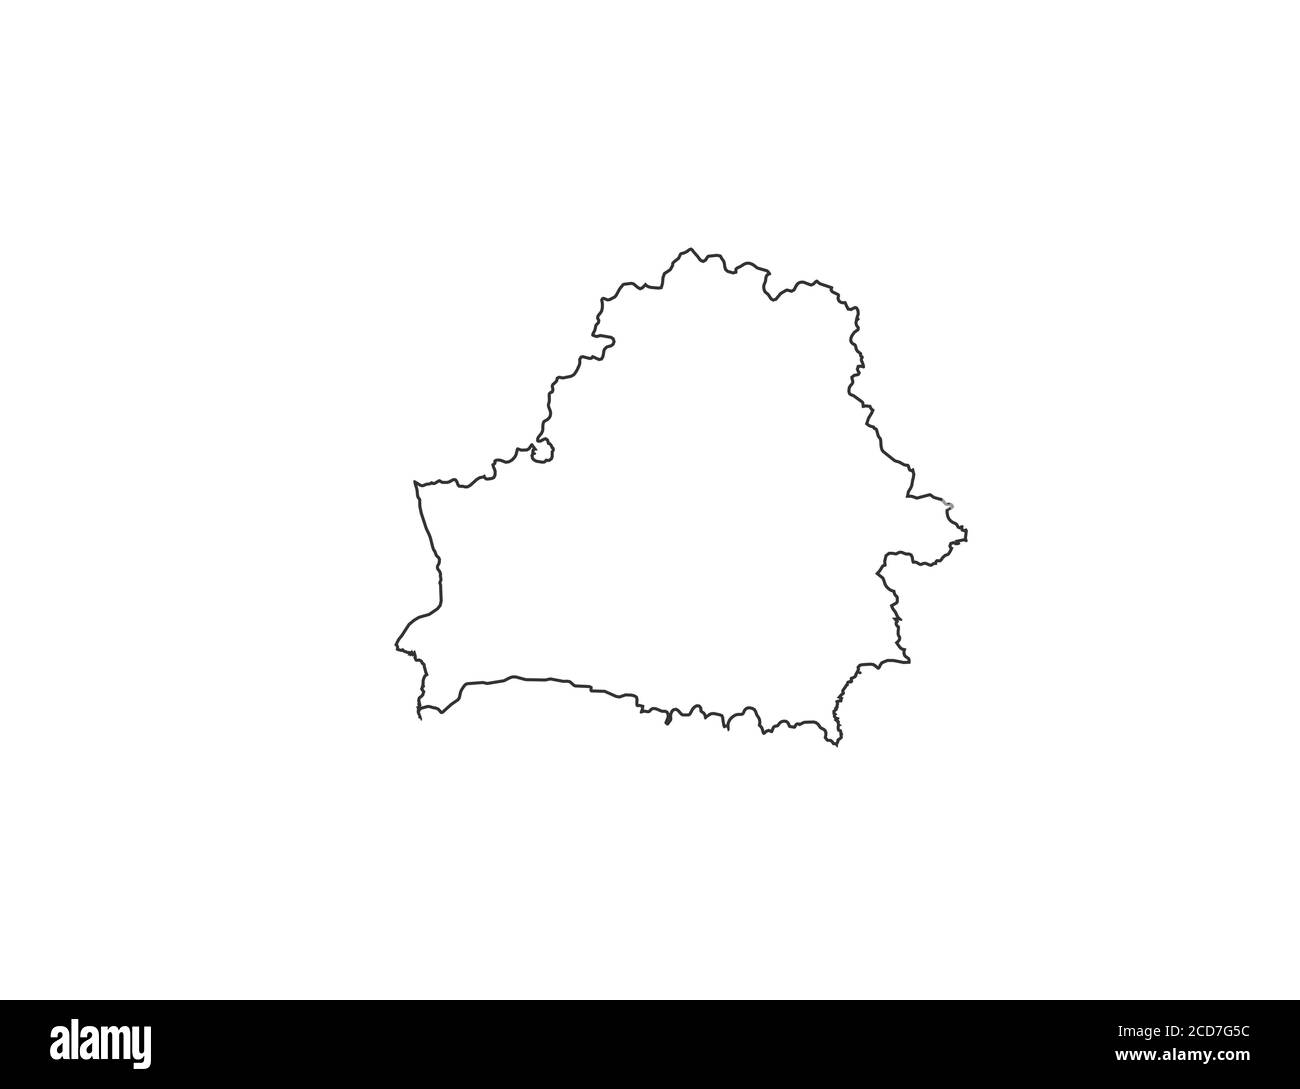 Belarus map - Republic of Belarus. Europe. Vector illustration. Stock Vector